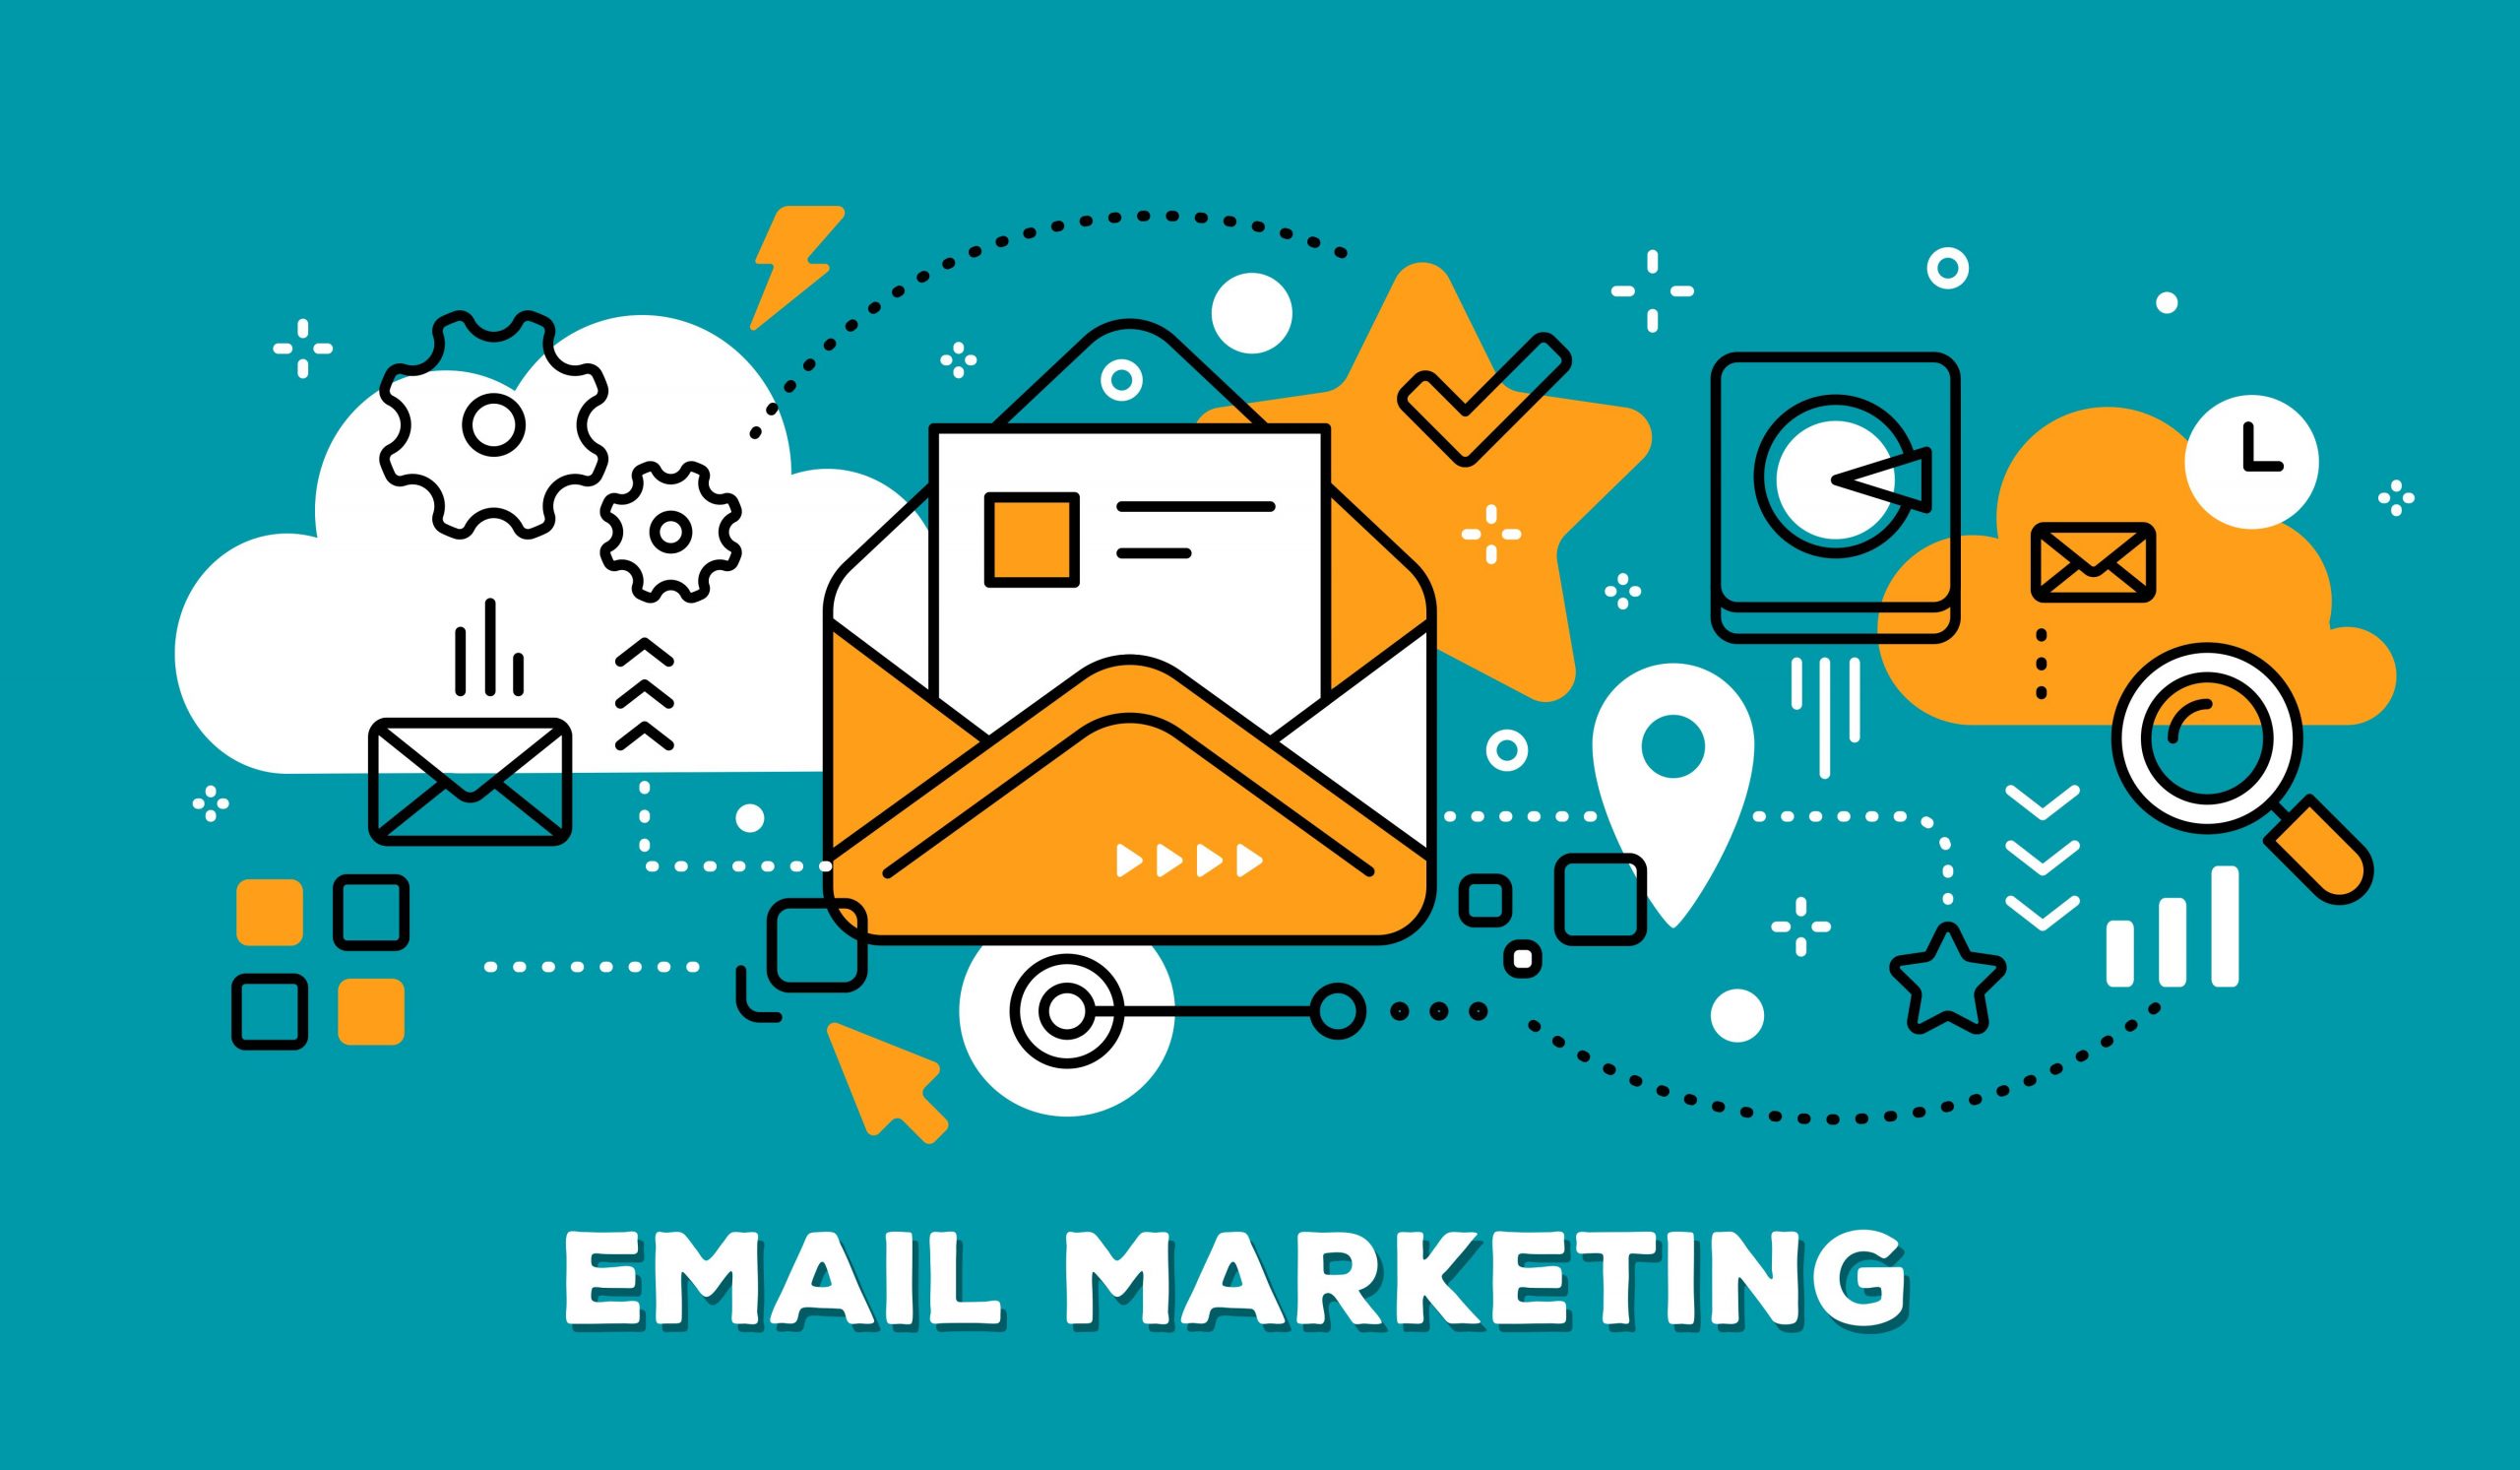 ایمیل مارکتینگ یا بازاریابی ایمیلی و استراتژی های آن چیست؟ 